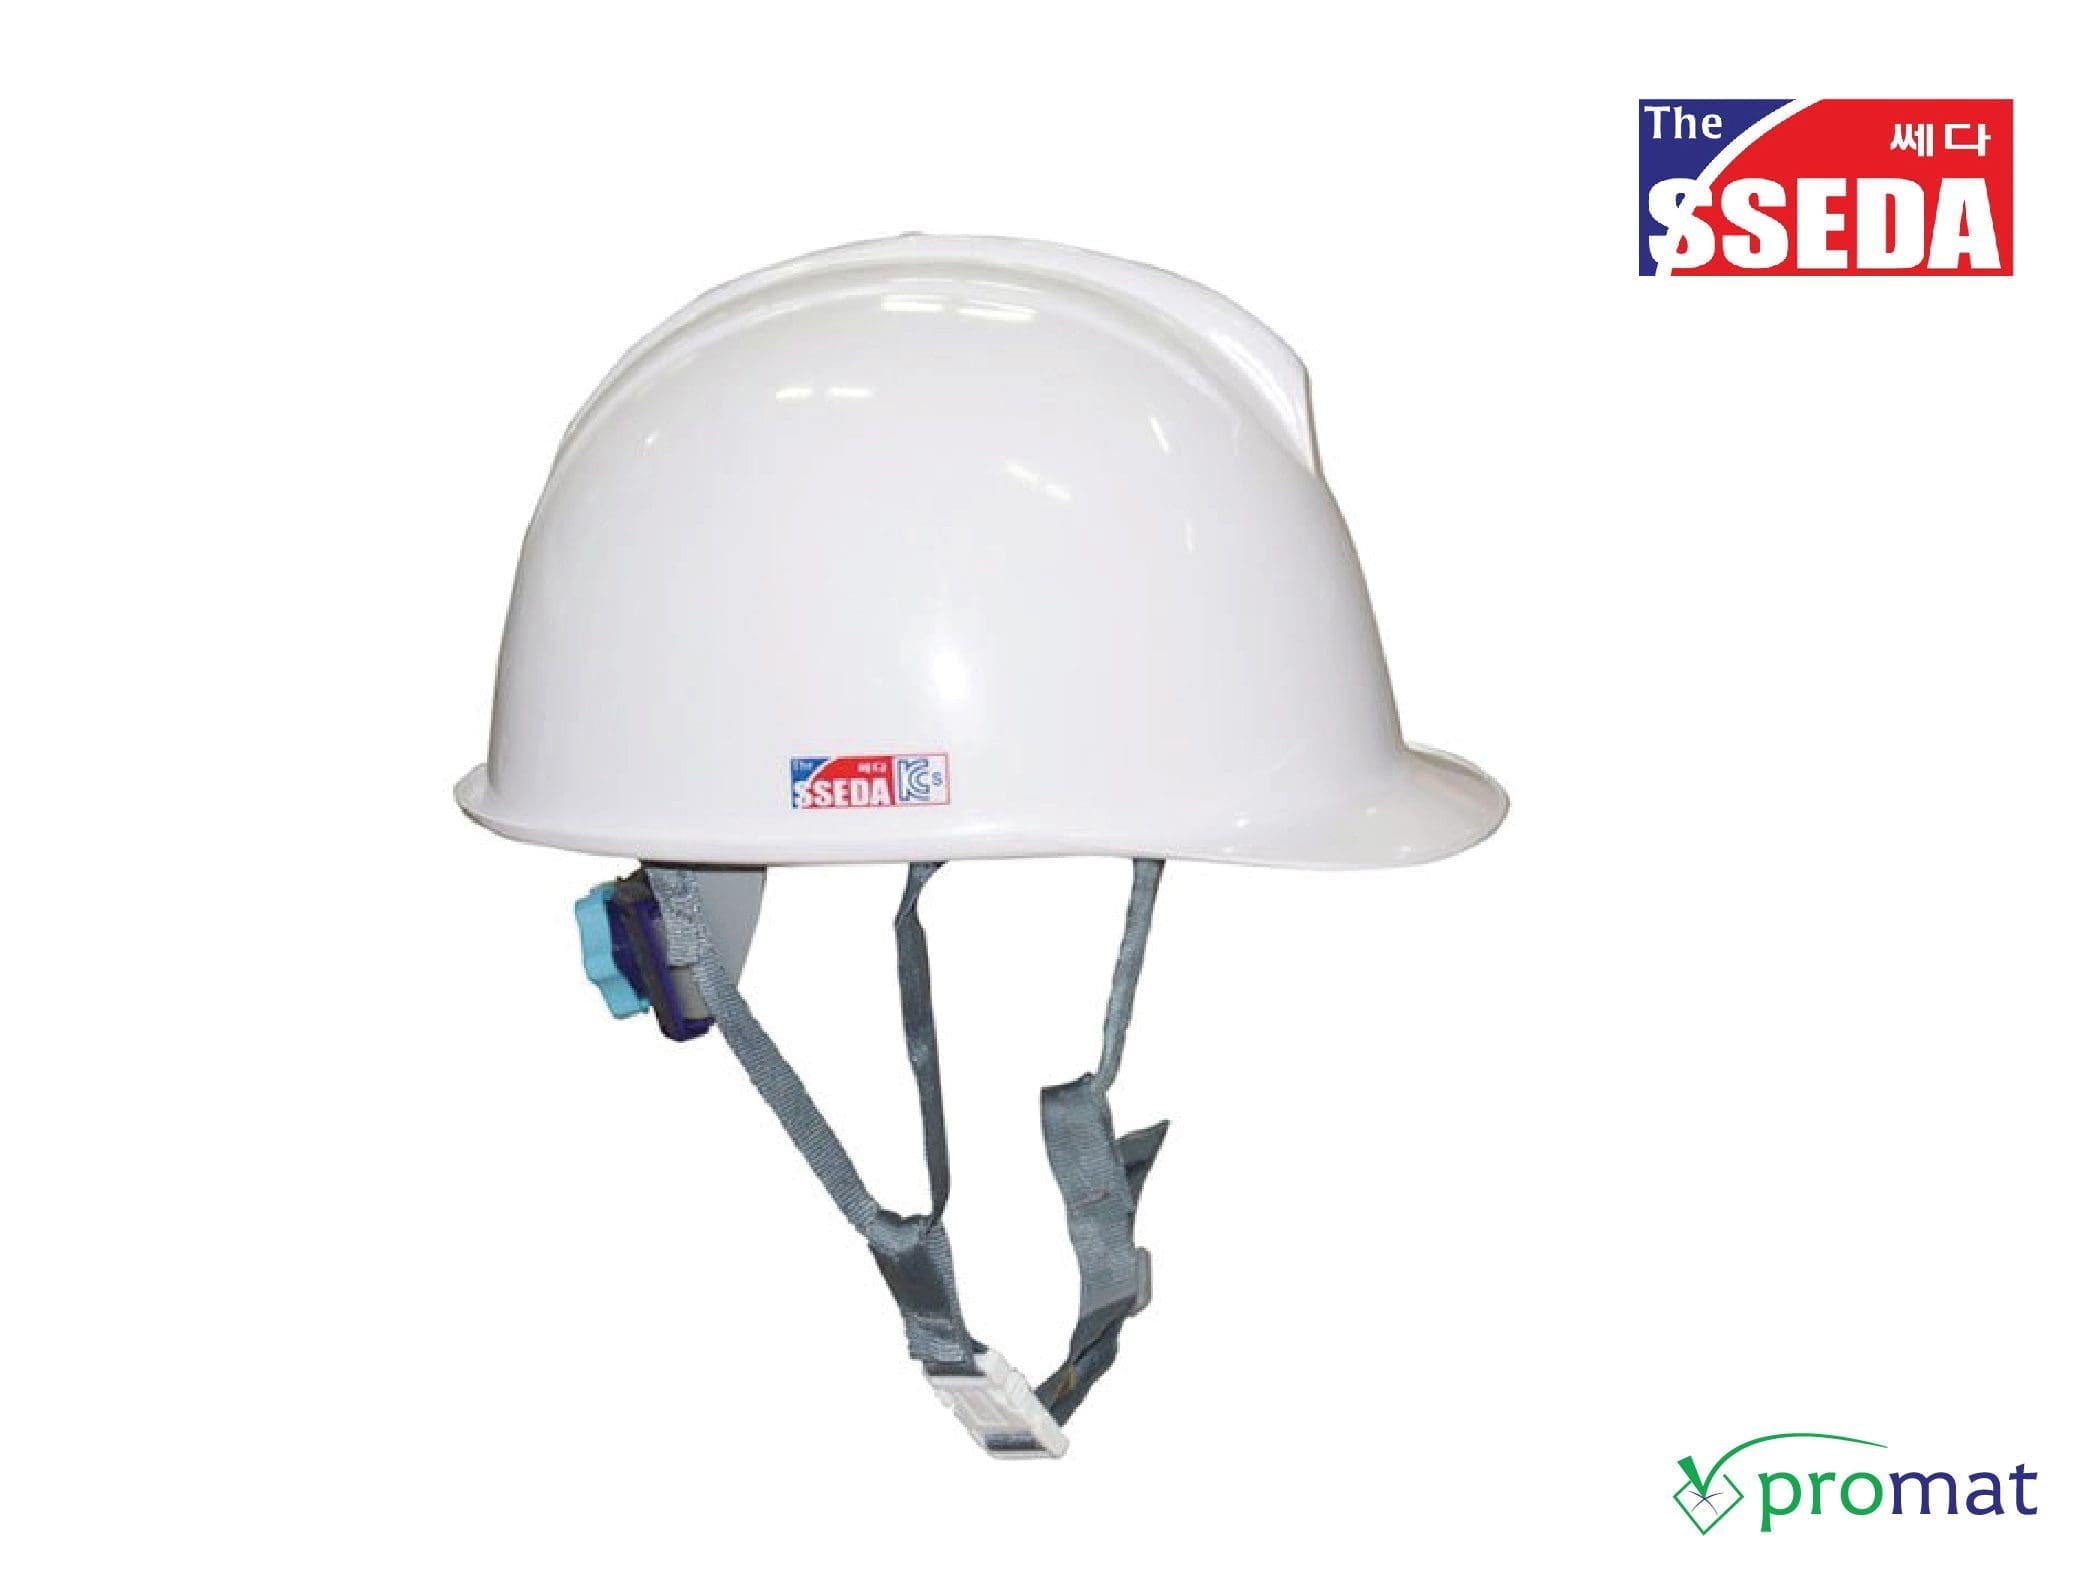 mũ bảo hộ lao động hàn quốc sseda safety helmets promat.com.vn –05